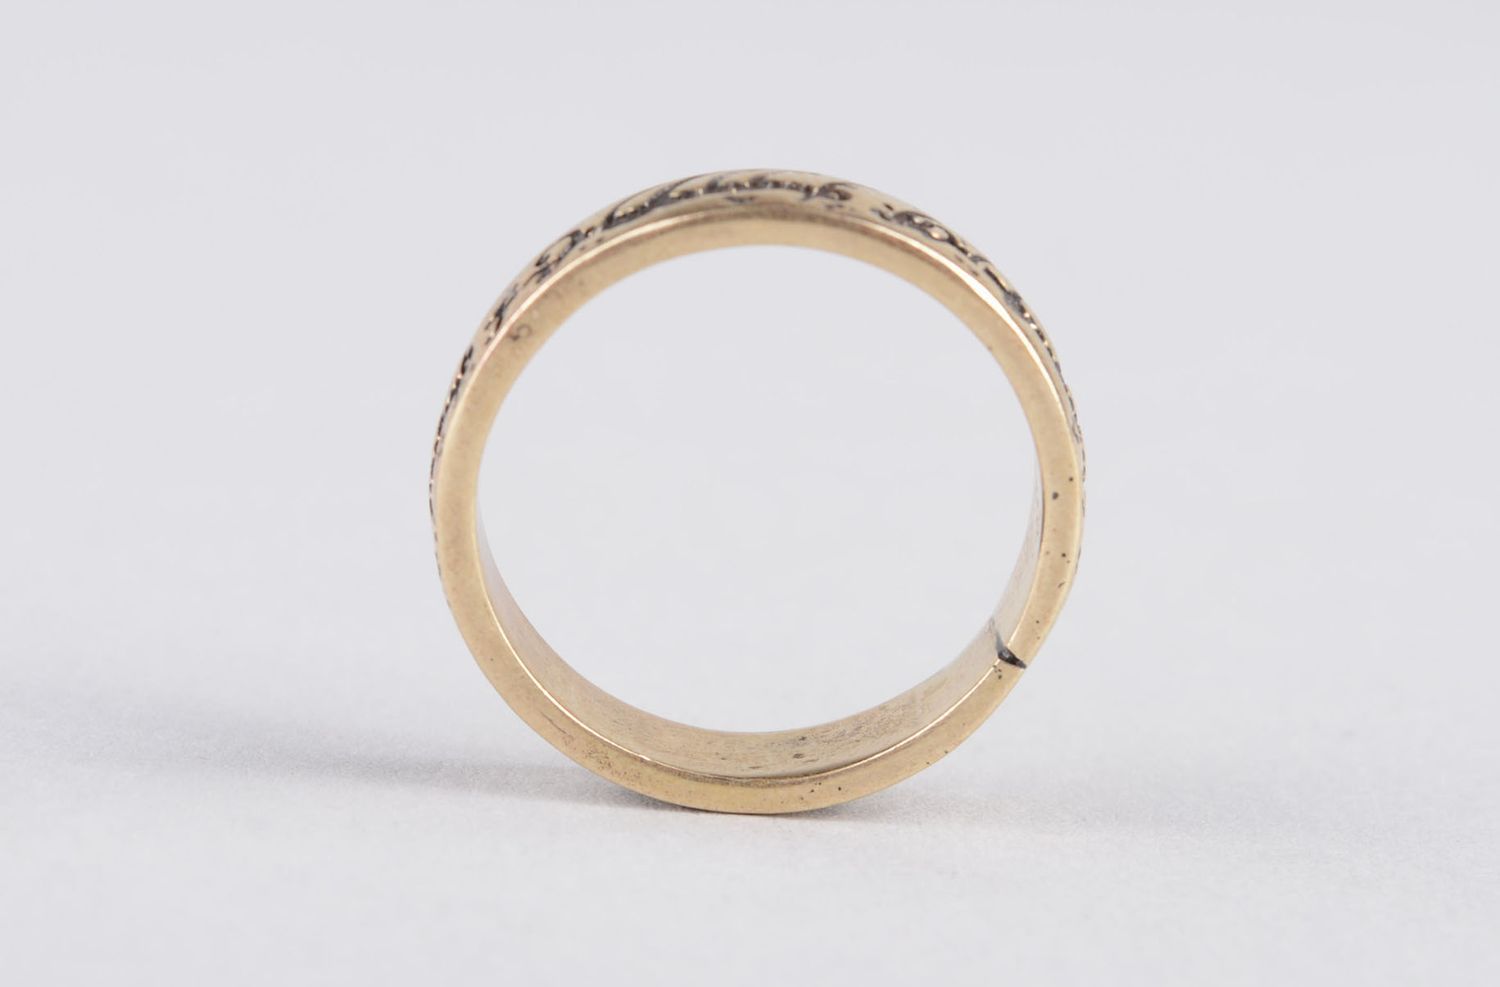 Мужское кольцо ручной работы красивое кольцо цельное мужской аксессуар  фото 5